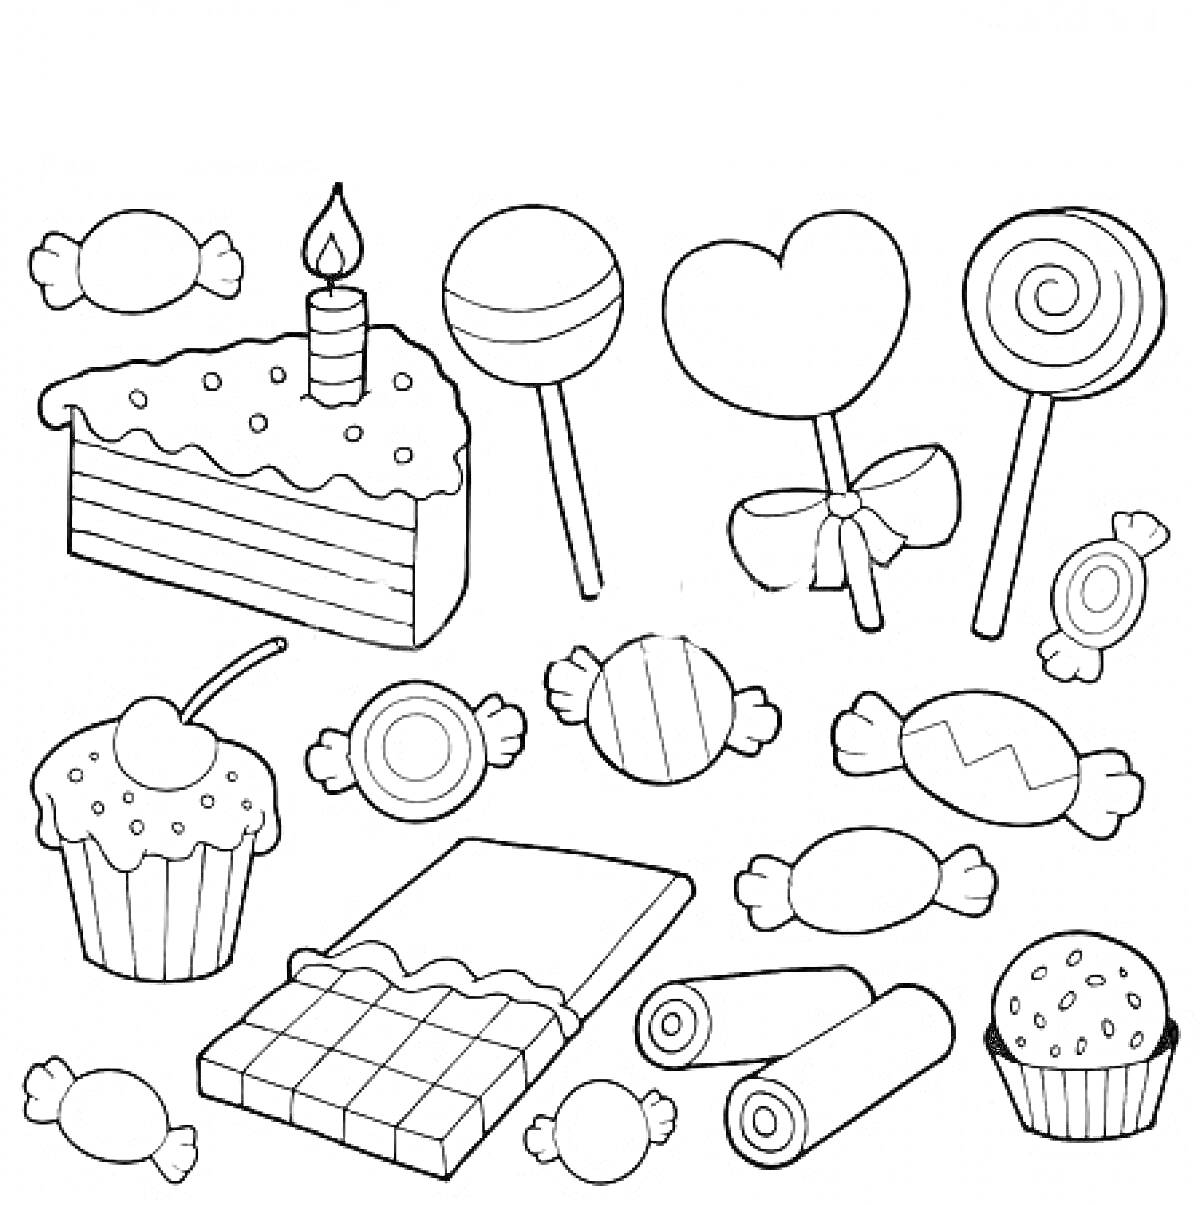 РаскраскаСладости: торт с свечой, леденец на палочке, леденец-сердце с бантом, леденец-спираль, кекс с вишней, кекс с посыпкой, шоколадная плитка, роллы из карамели, конфеты в обертке